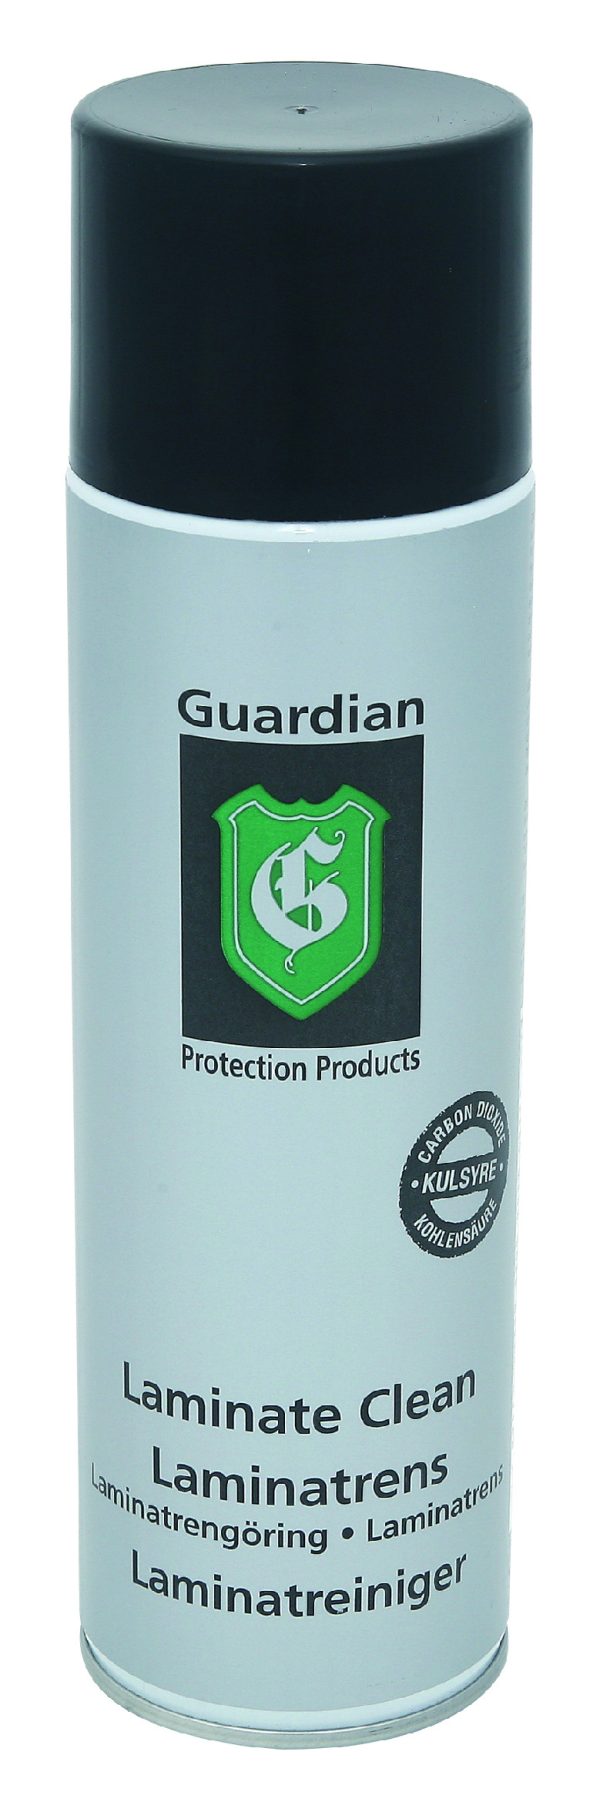 Čistící prostředek Guardian na laminátové povrchy  - Obsah500 ml- Materiál Plast